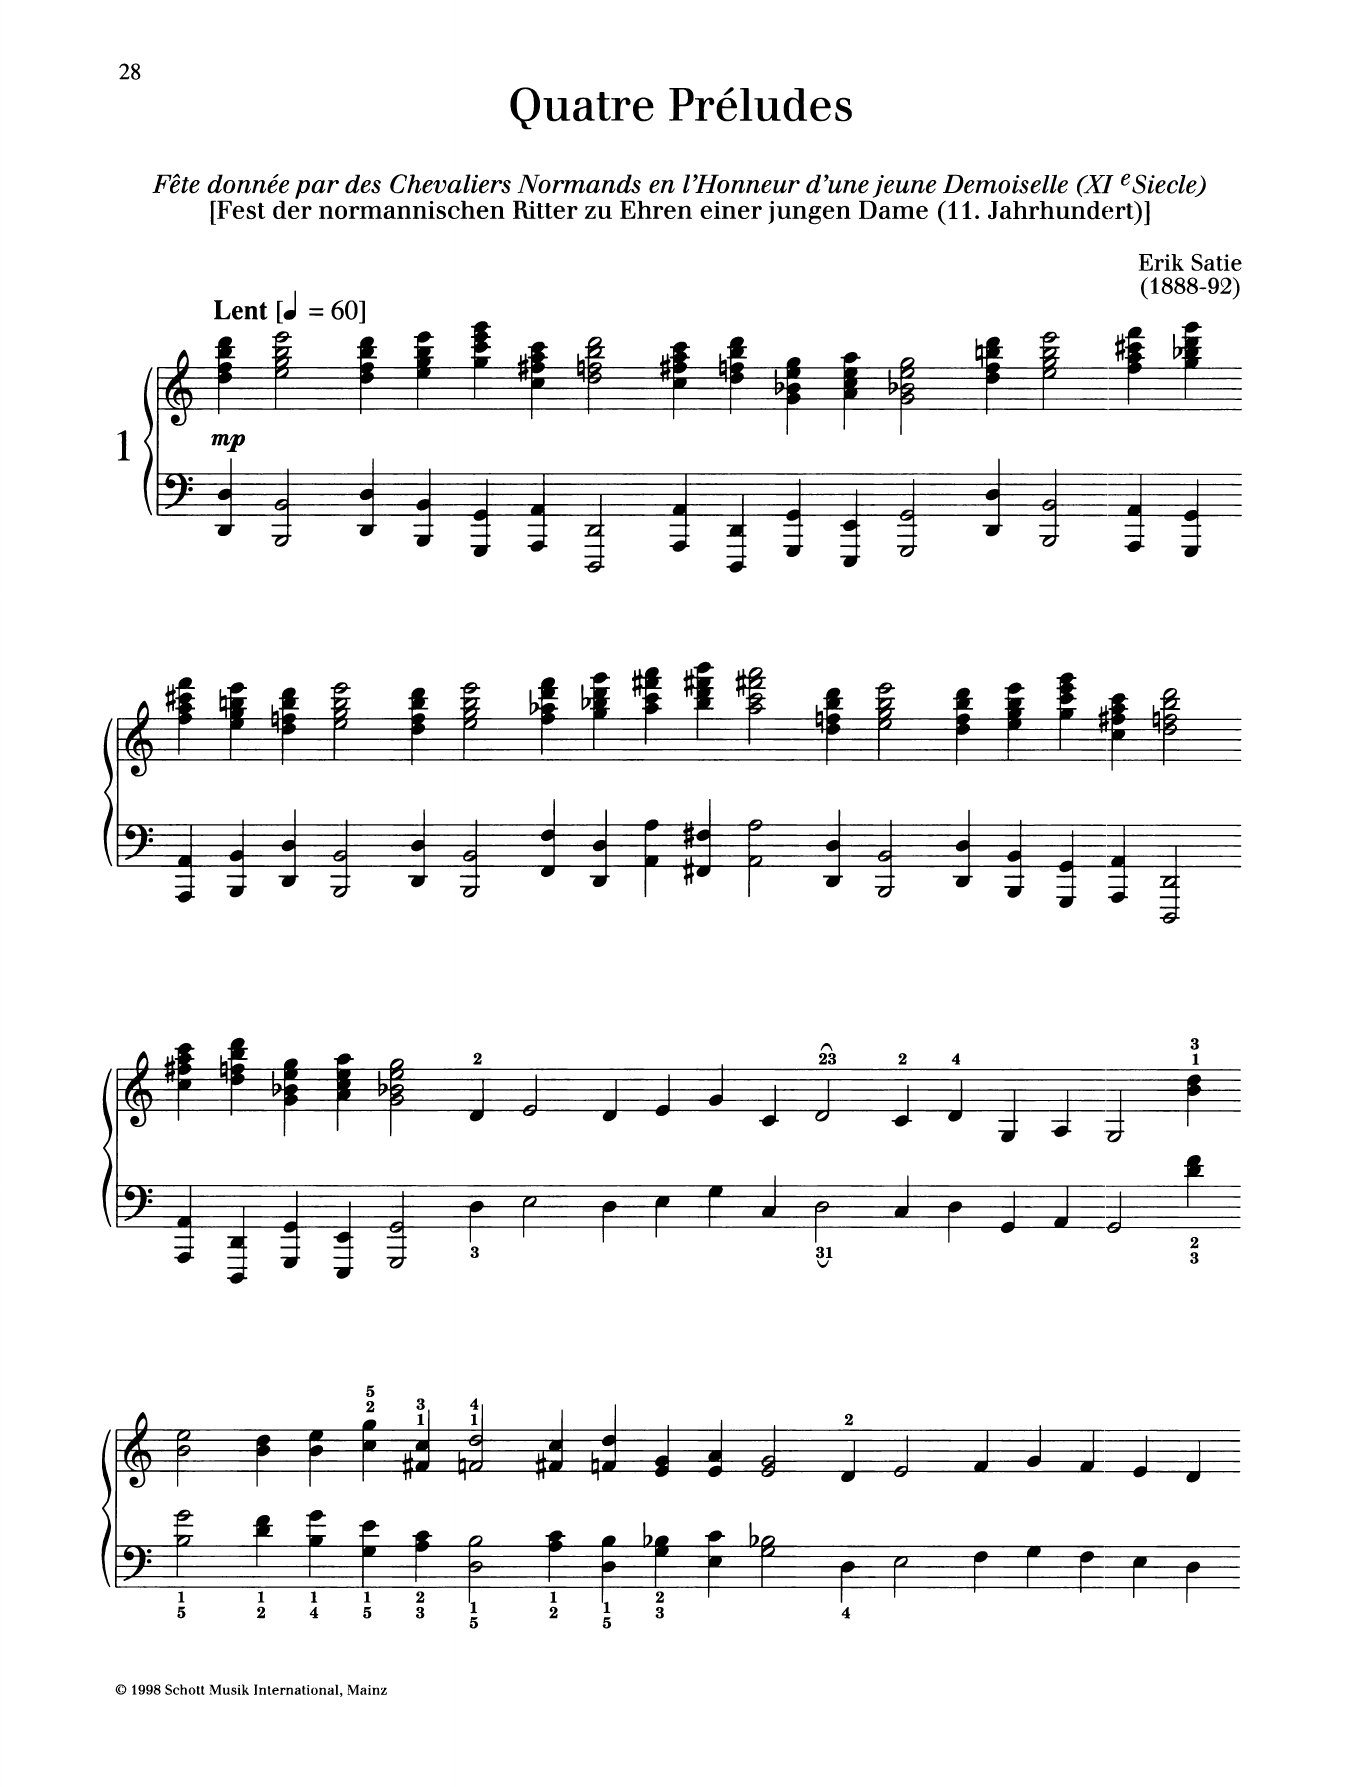 Download Erik Satie Fete donnee par des Chevaliers Normands Sheet Music